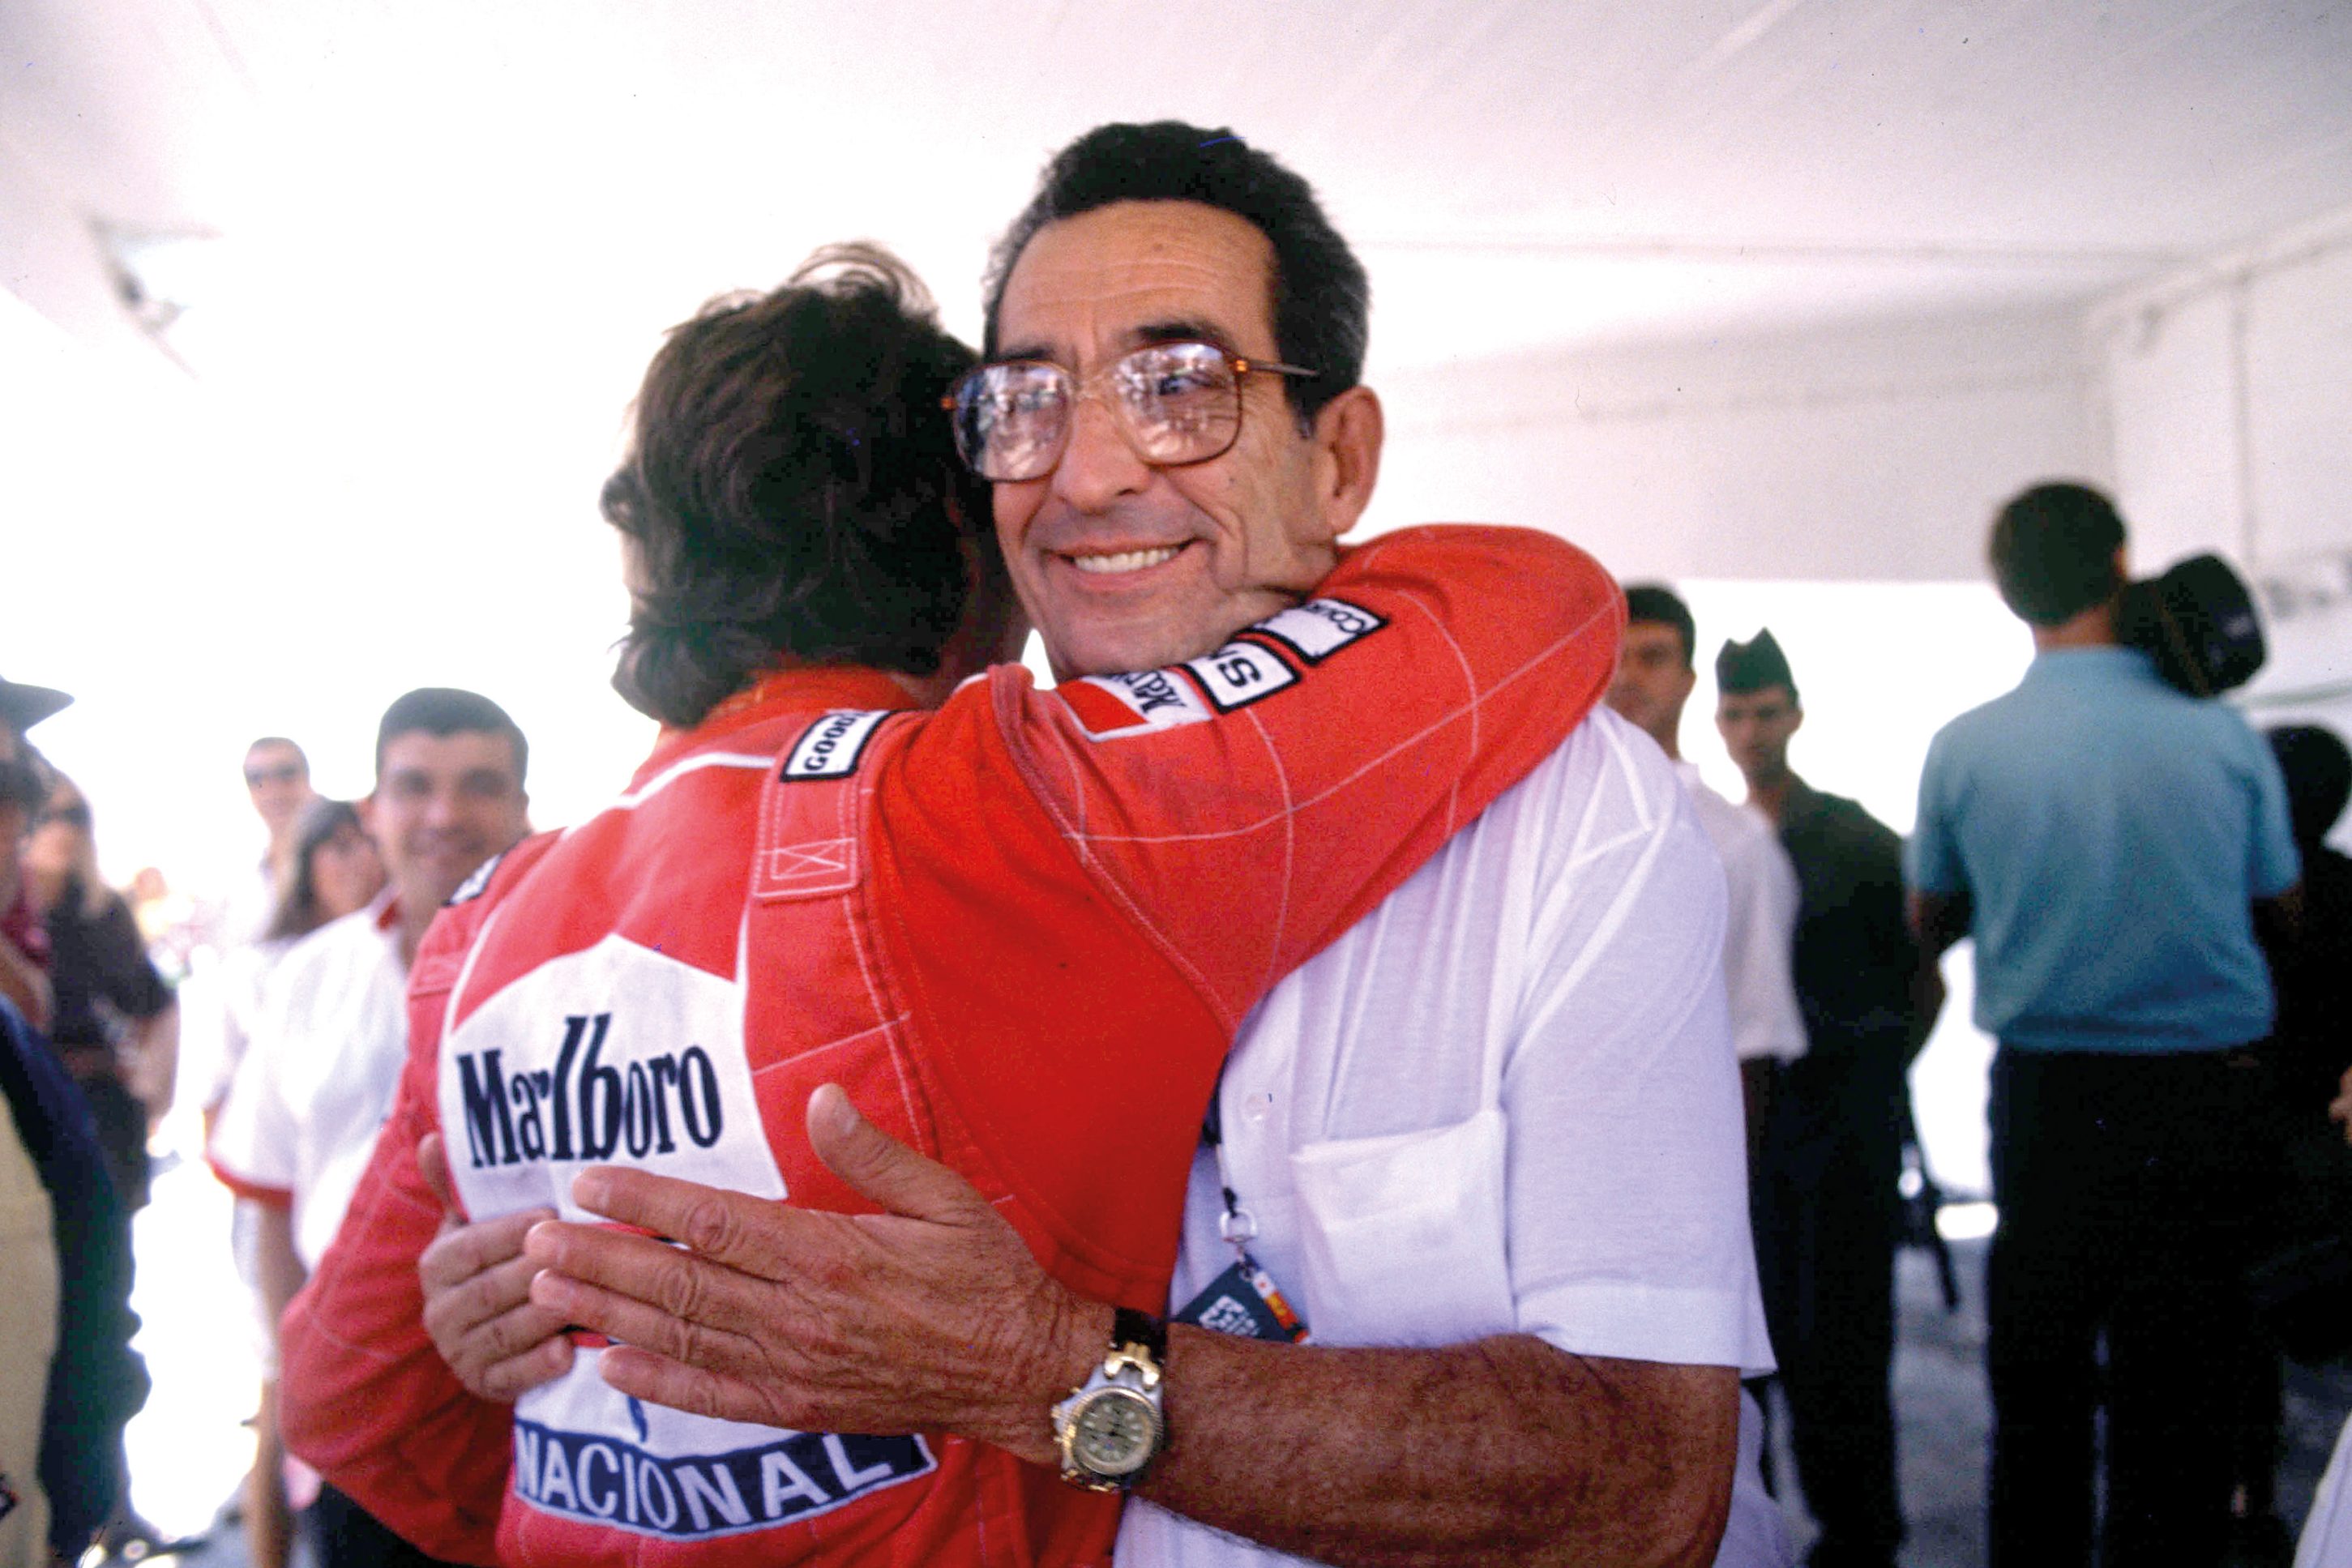 Ayrton-Senna-piloto-de-Fórmula-1-da-McLaren-abraçando-o-pai-Milton-da-Silva.-e1638701674553.jpg